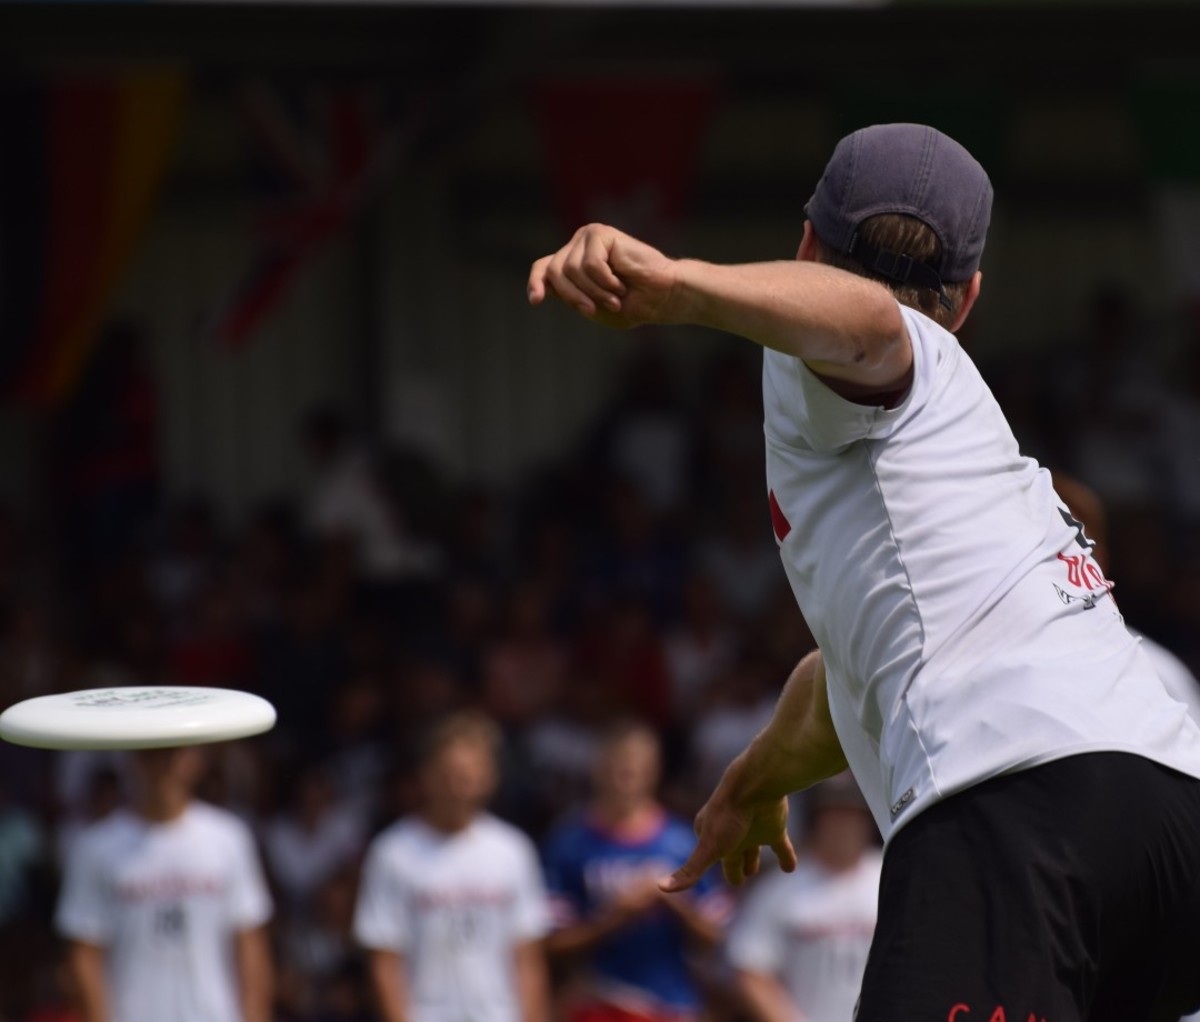 Man in white T-shirt throwing frisbee